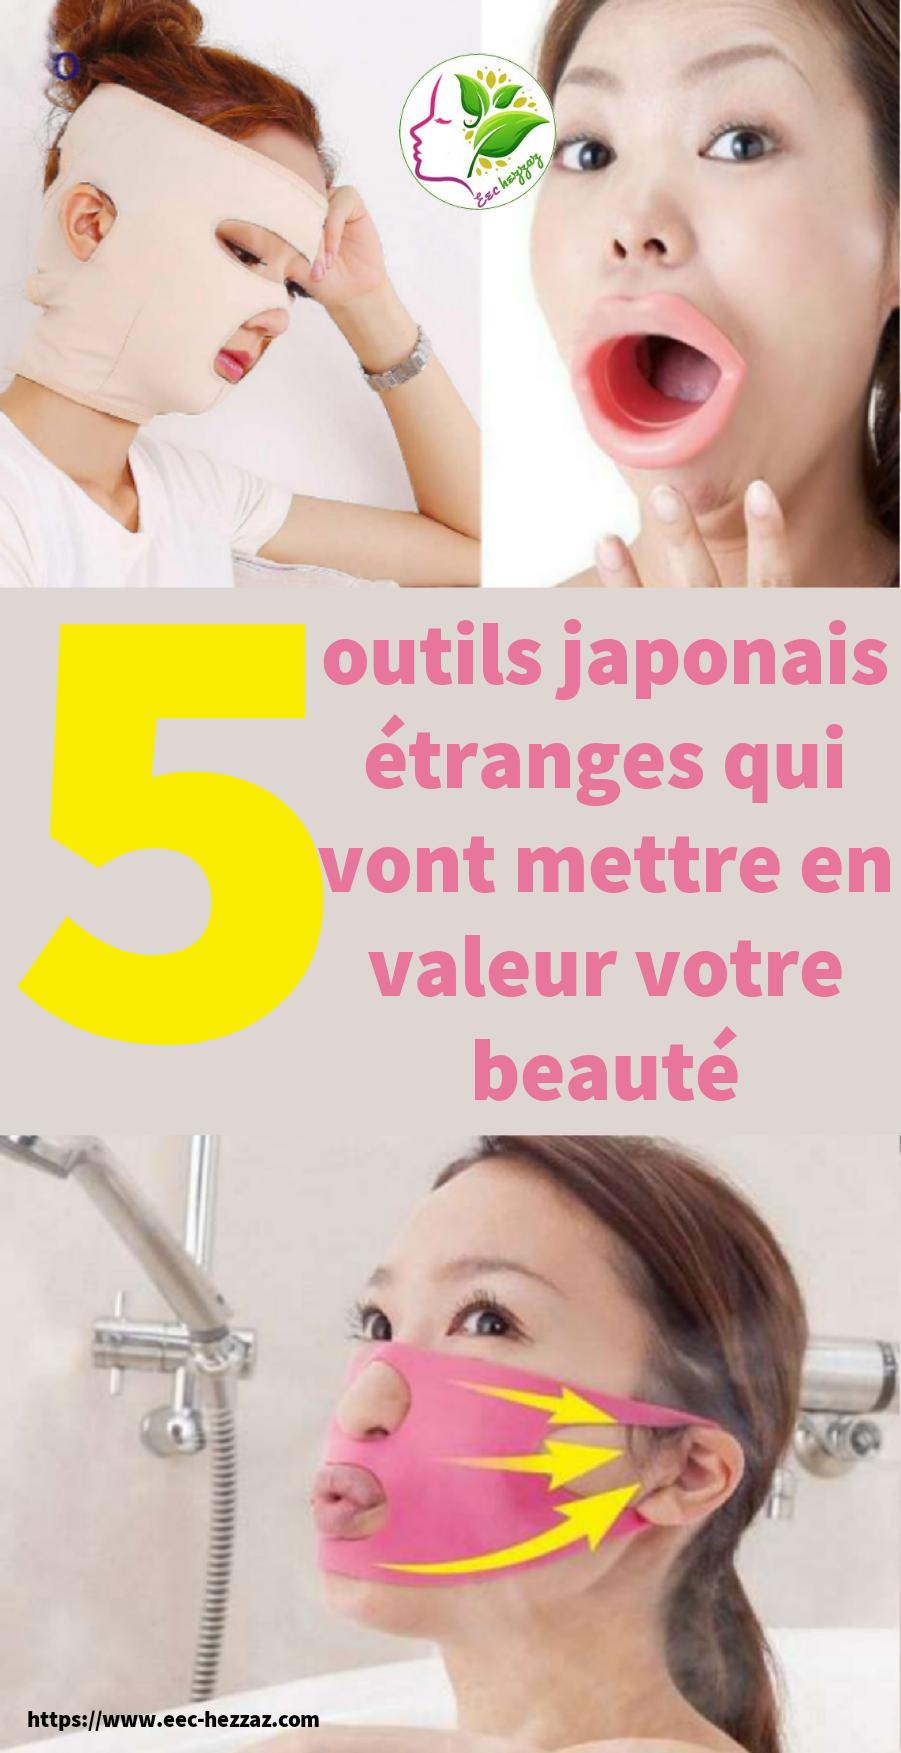 5 outils japonais étranges qui vont mettre en valeur votre beauté